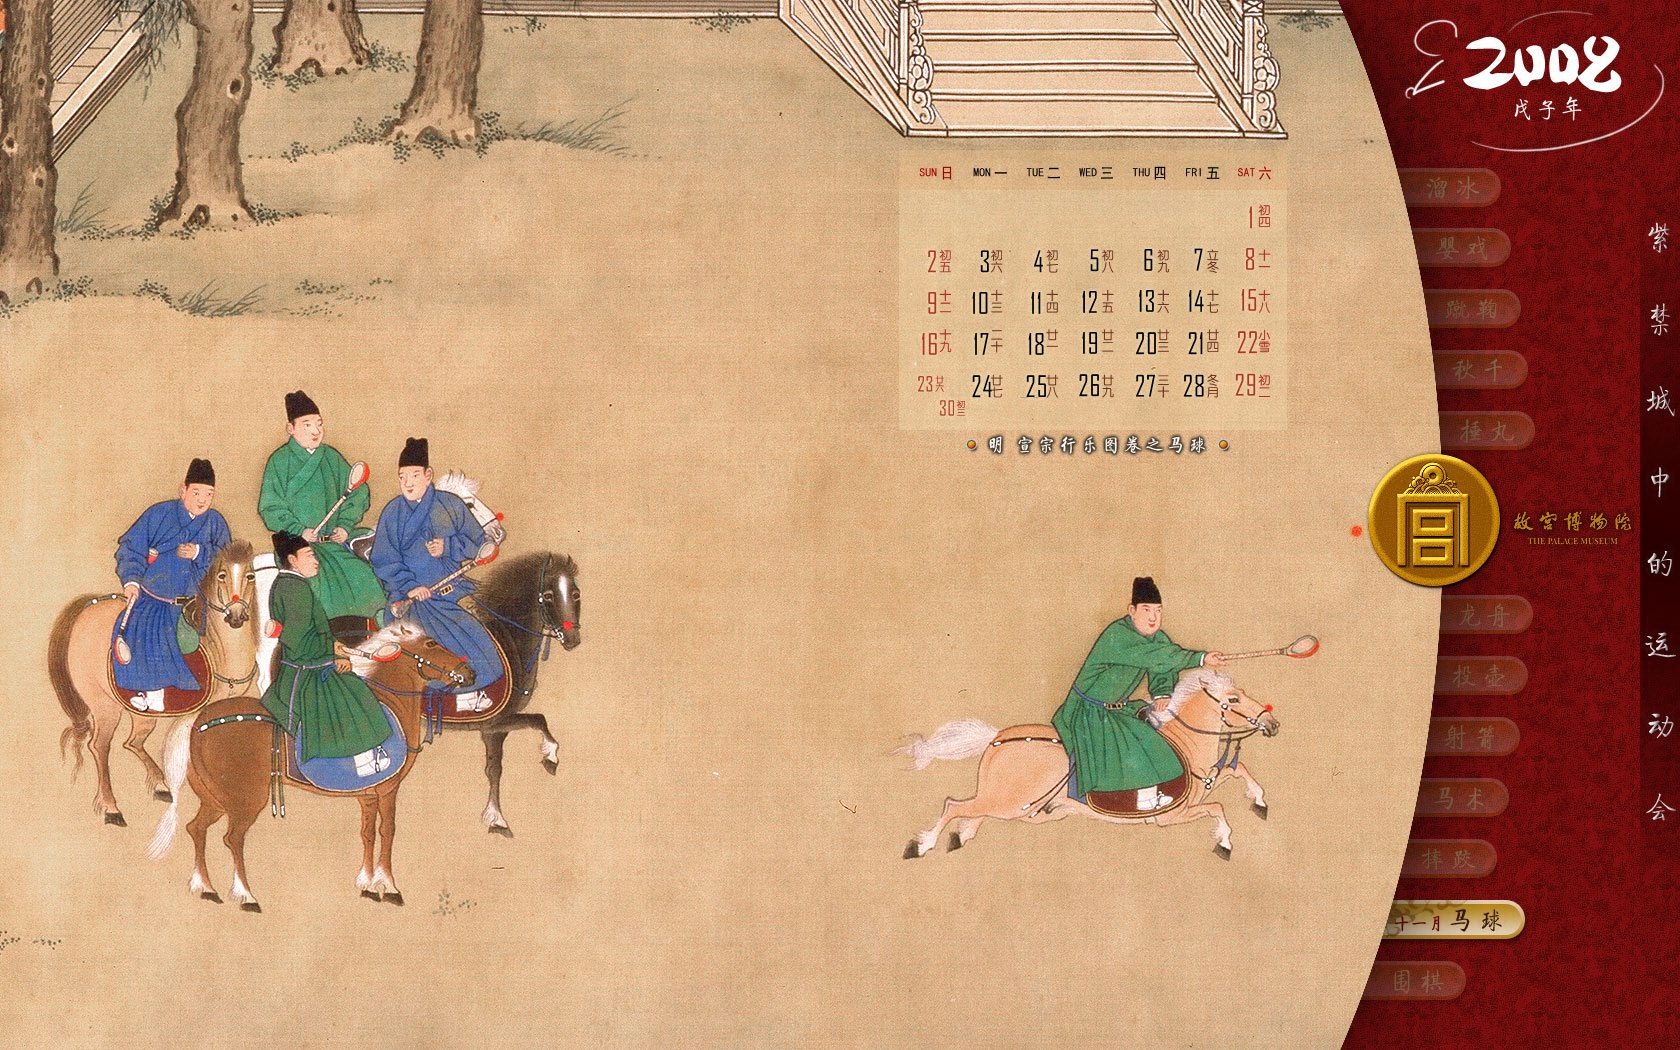 北京故宫博物院 文物展壁纸(二)20 - 1680x1050